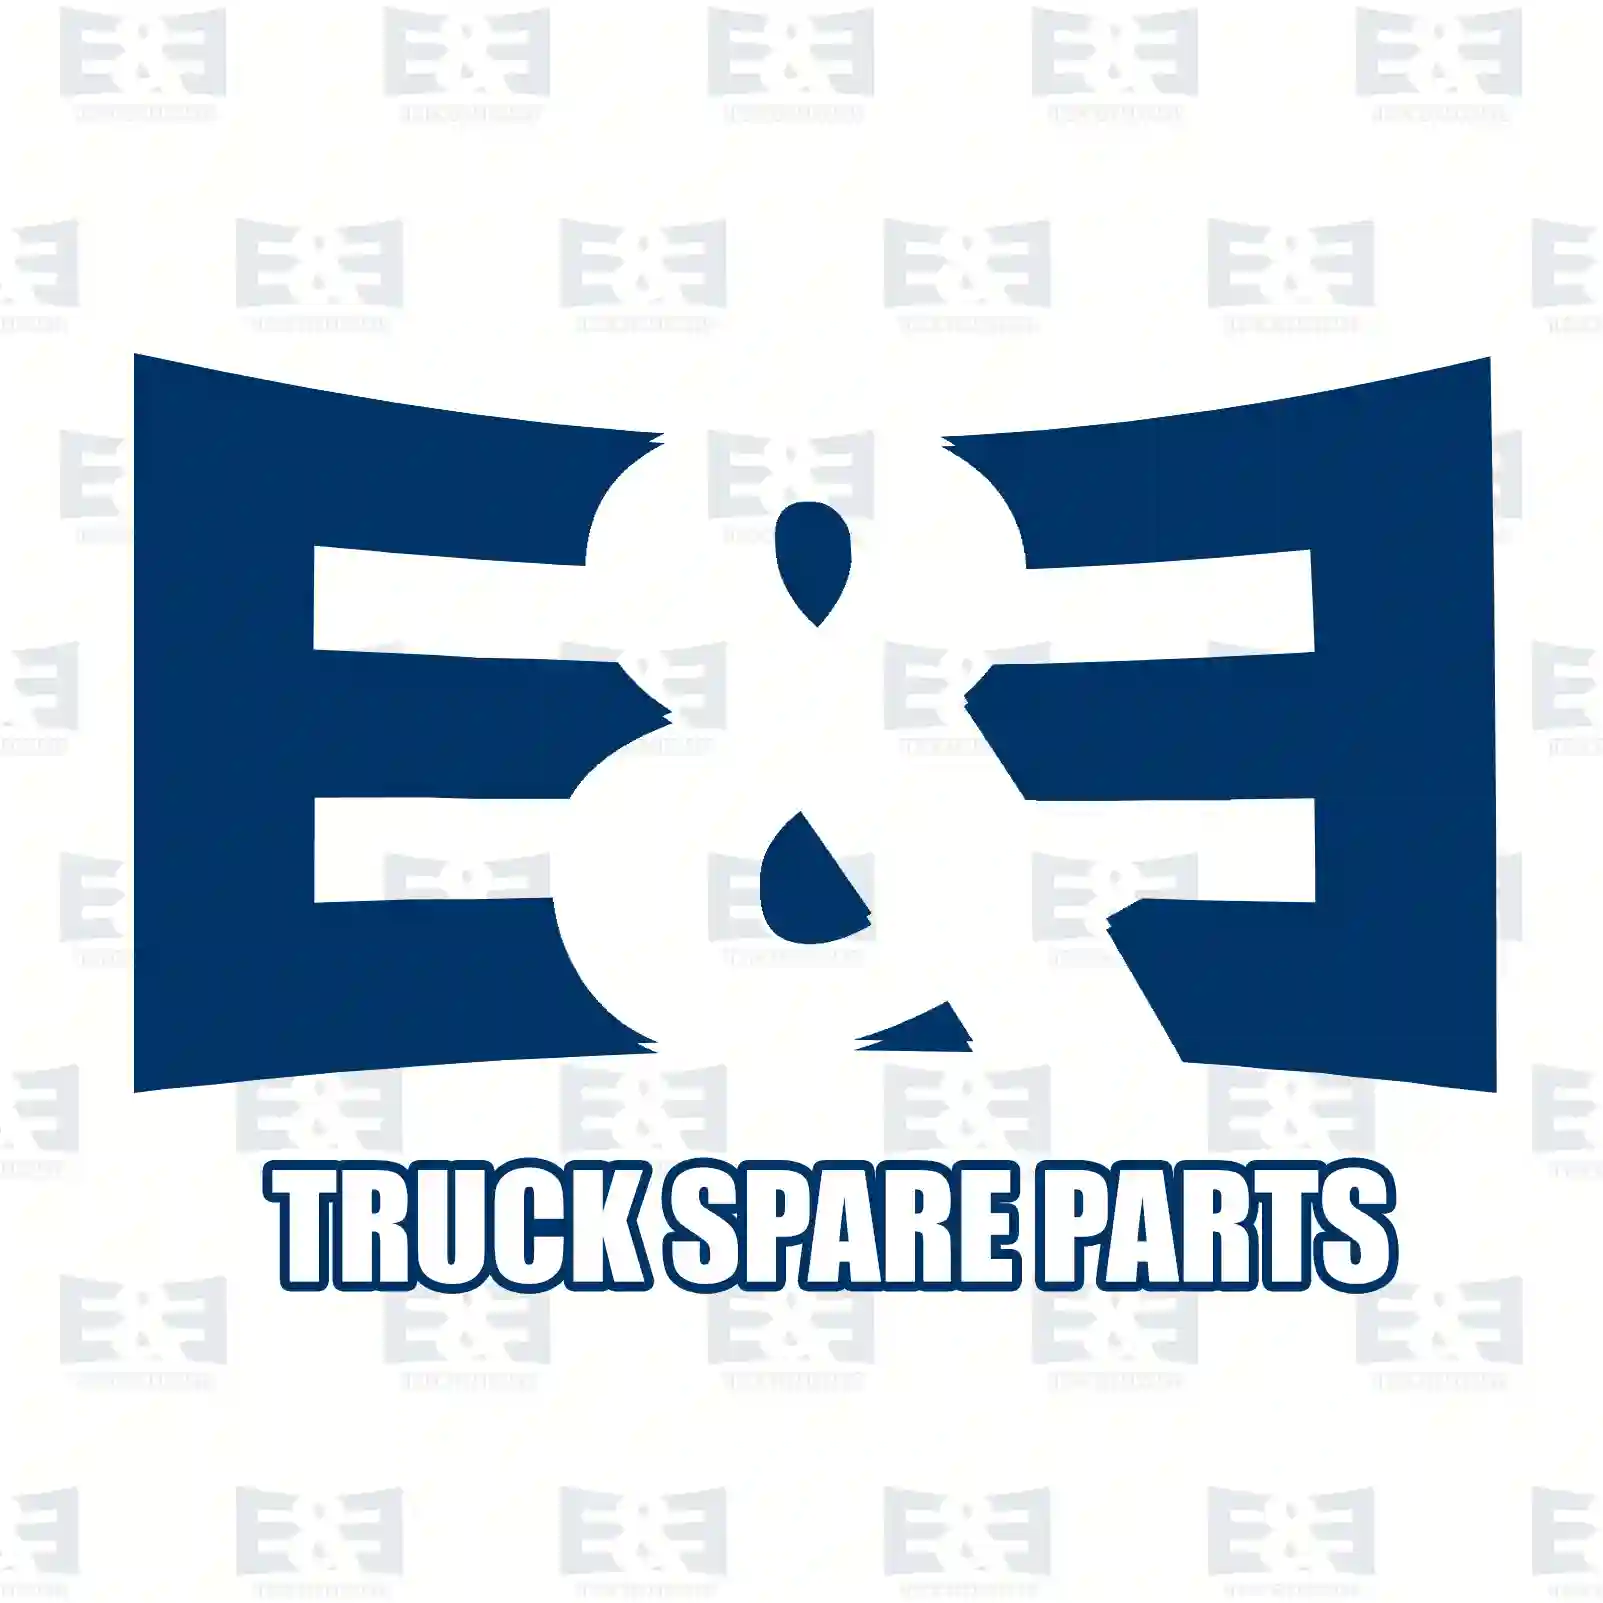 Load Sensitive Valve Load sensitive valve, EE No 2E2293395 ,  oem no:1307043, 1338102, 302658 E&E Truck Spare Parts | Truck Spare Parts, Auotomotive Spare Parts